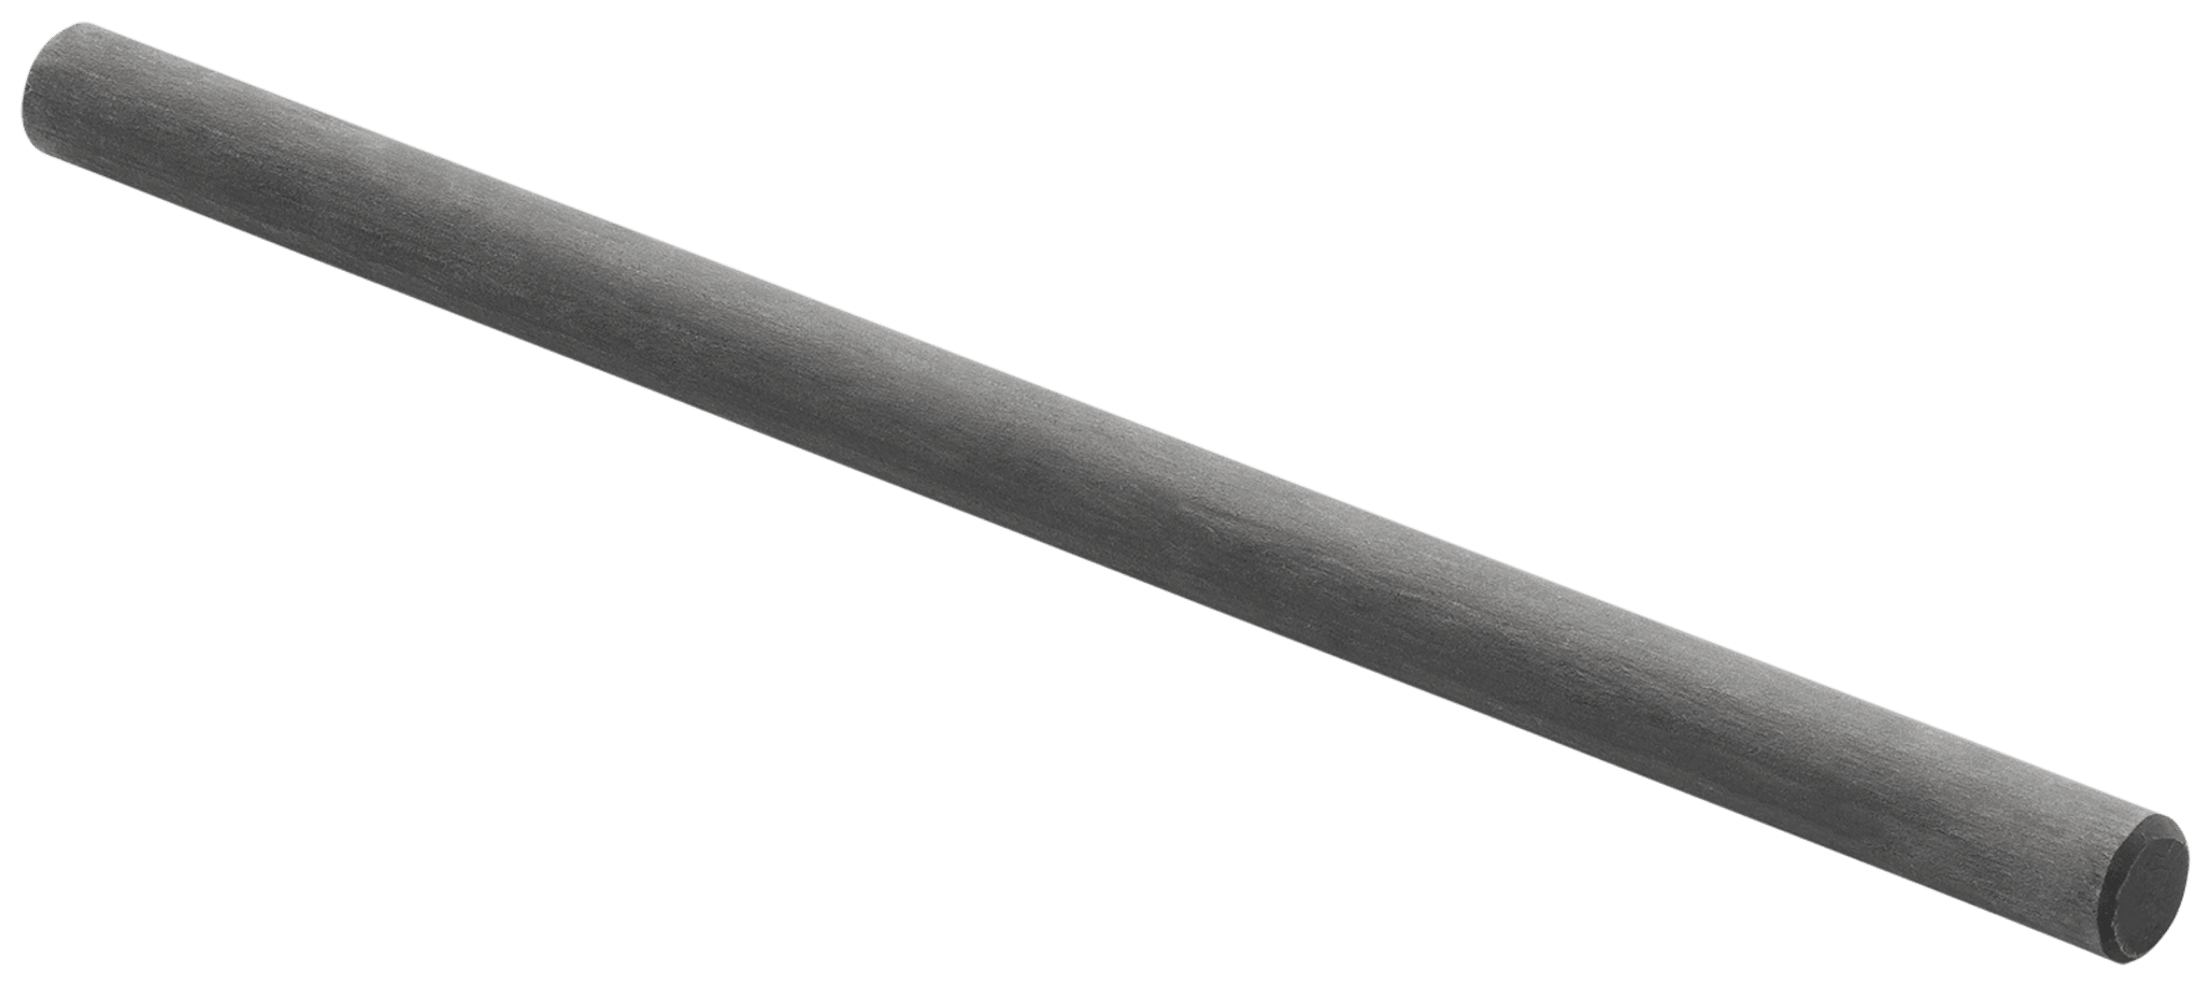 Carbon Rod, 200 mm